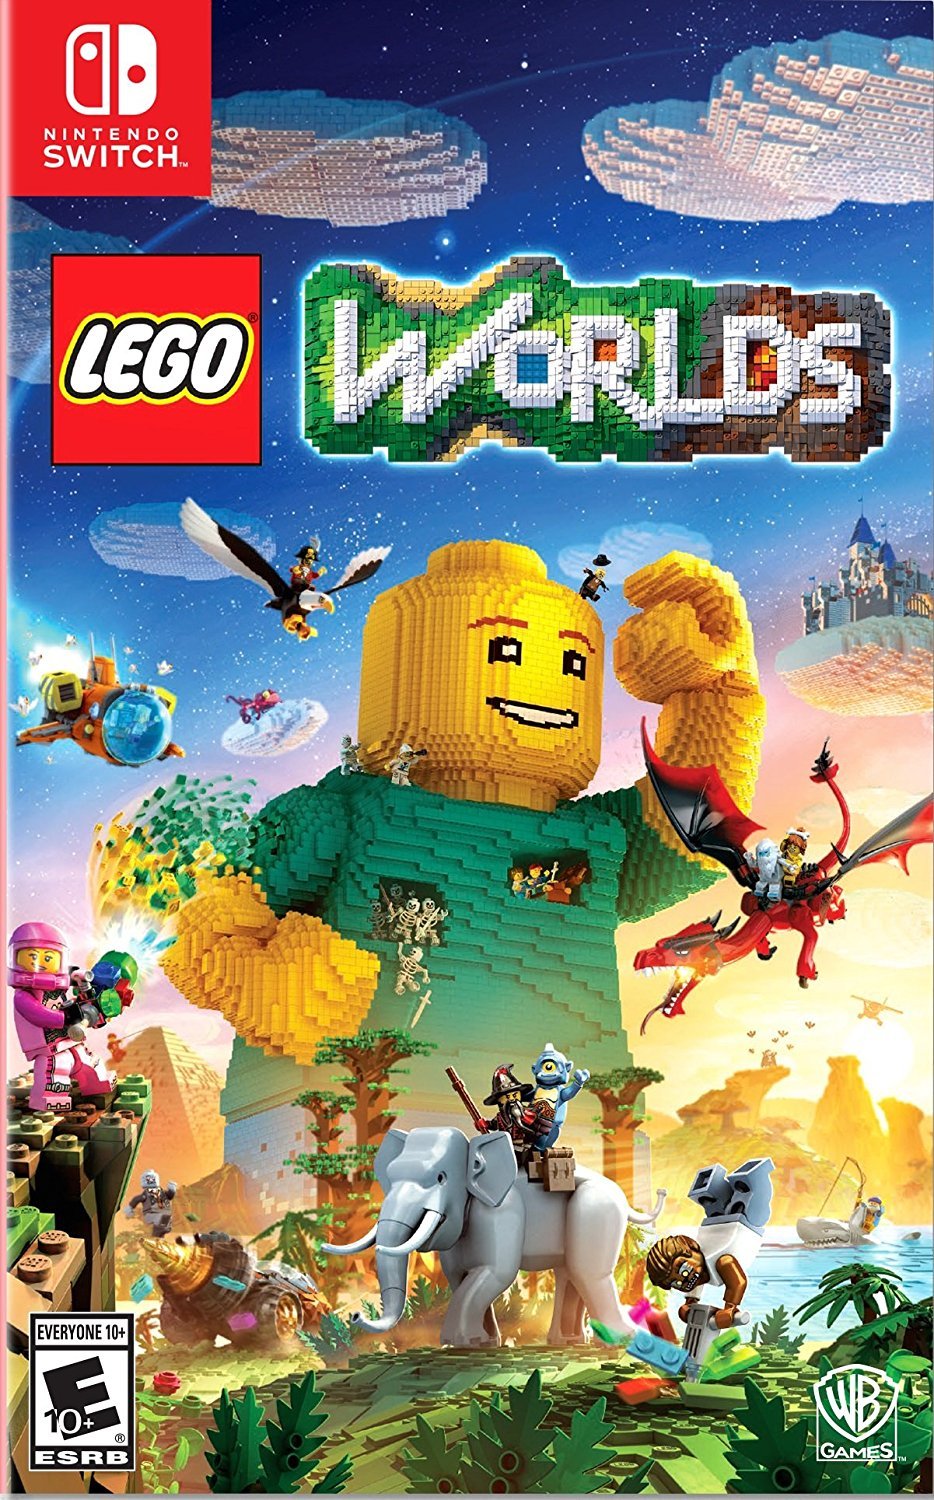 LEGO Worlds (US)